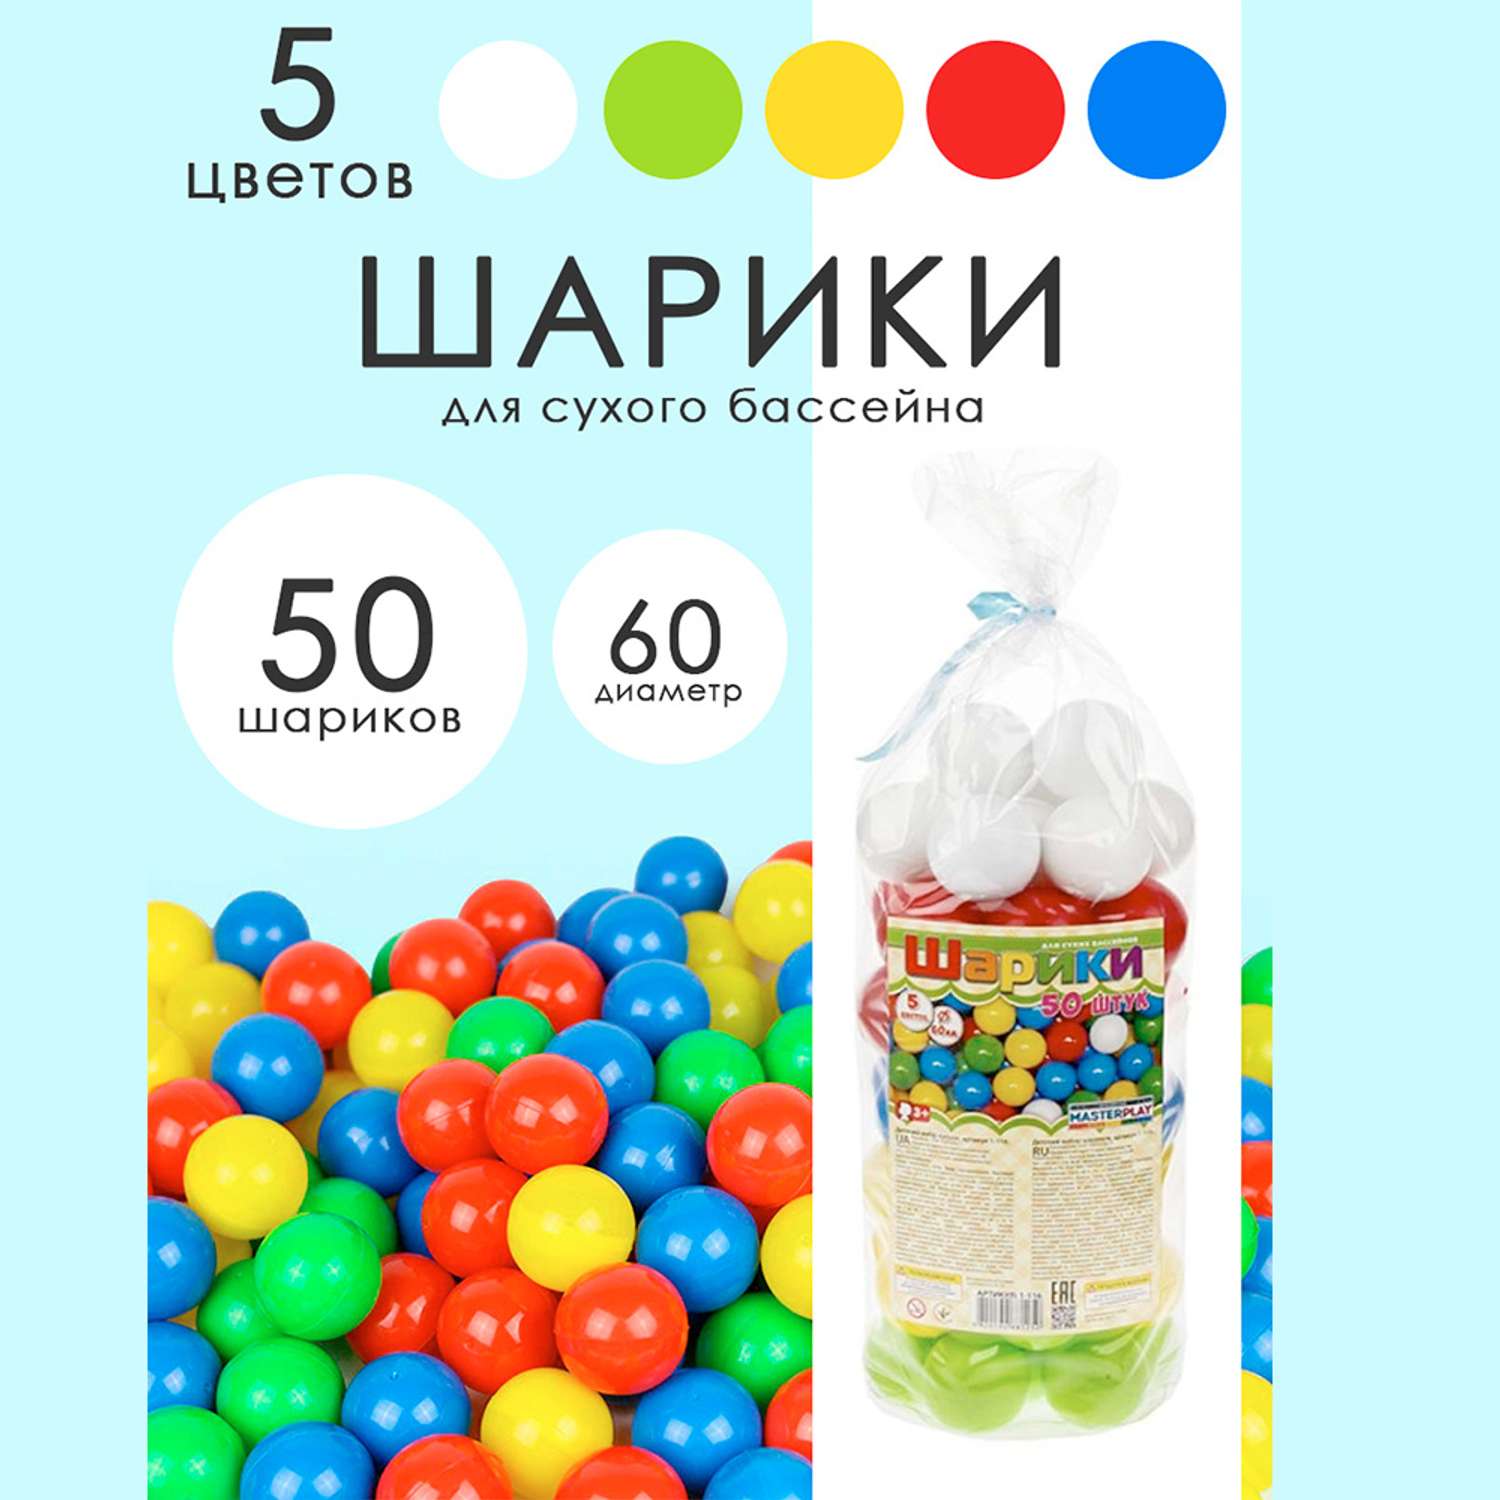 Шарики цветные Colorplast для сухого бассейна 60 мм 50 шт - фото 3